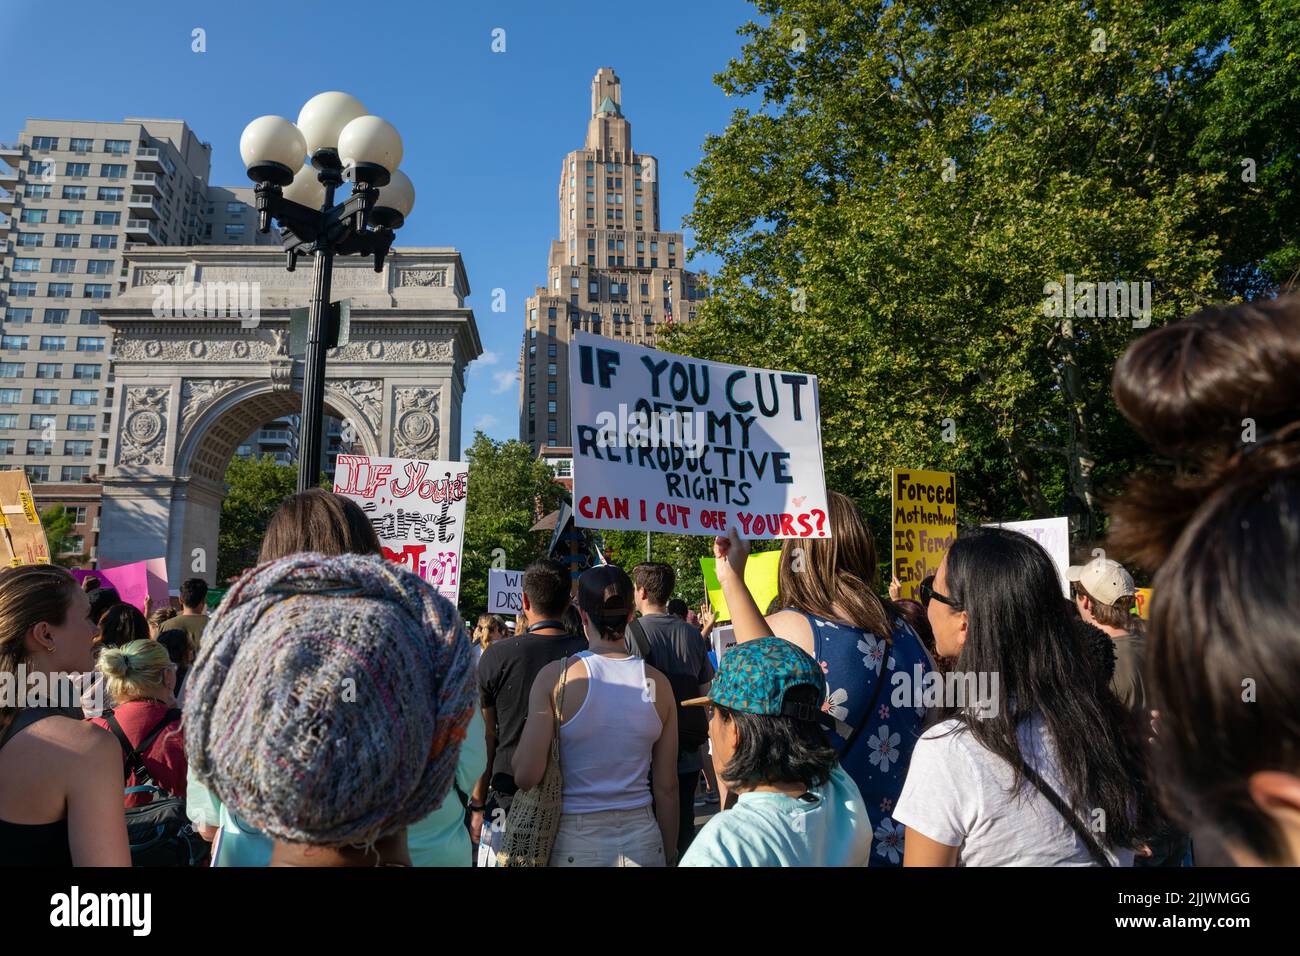 Manifestantes con carteles que luchan por los derechos reproductivos de las mujeres en Washington Square Park, Nueva York, Estados Unidos Foto de stock